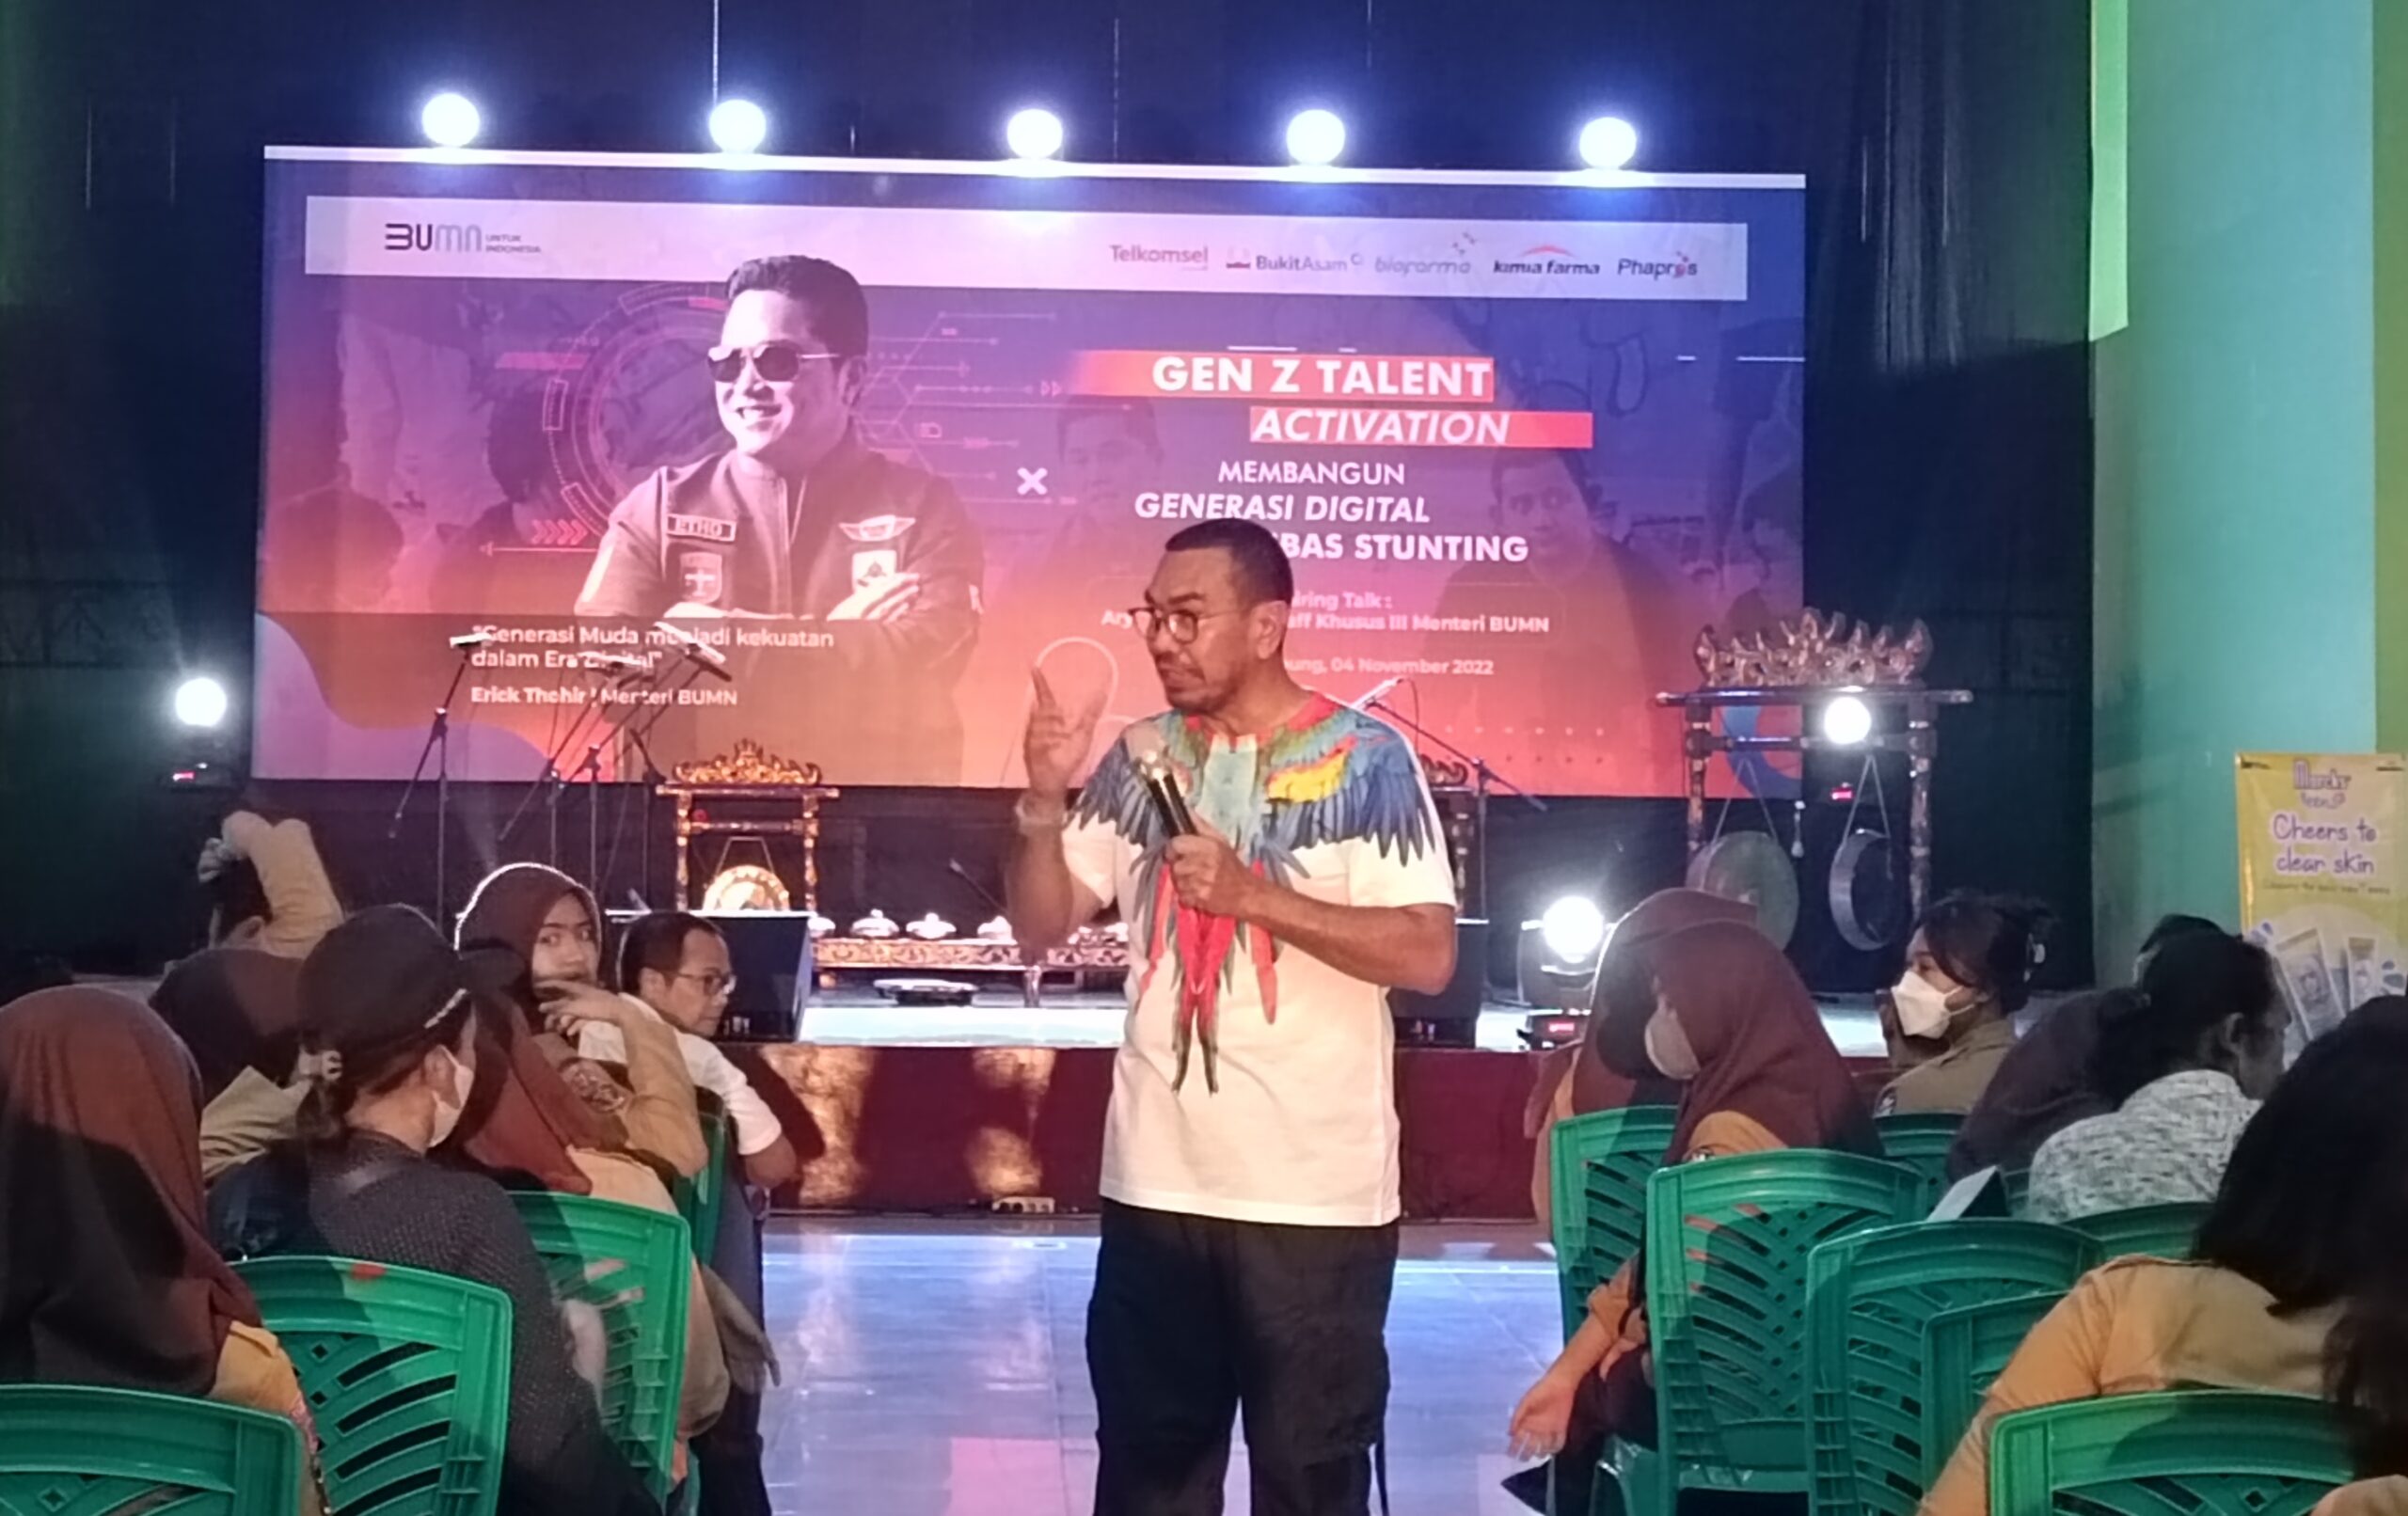 SMAN 2 Bandarlampung Gelar Gen Z Talent Activation, Erick Thohir Beri Pesan Khusus